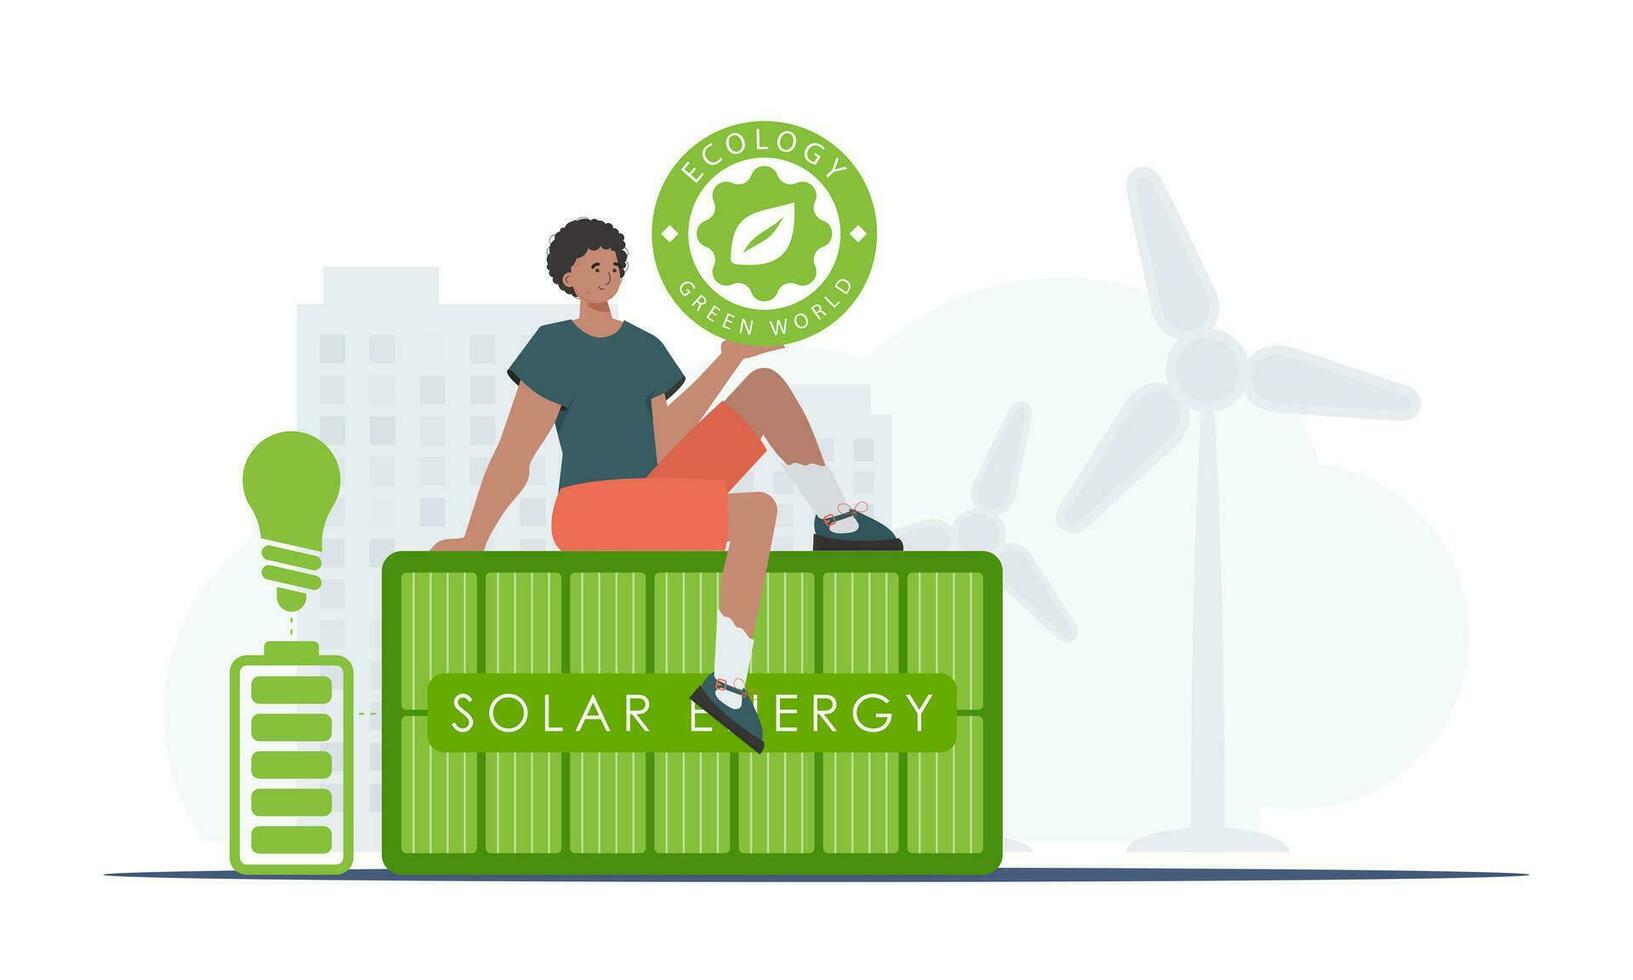 de begrepp av grön energi och ekologi. en man sitter på en sol- panel och innehar de eco logotyp i hans händer. vektor trend illustration.